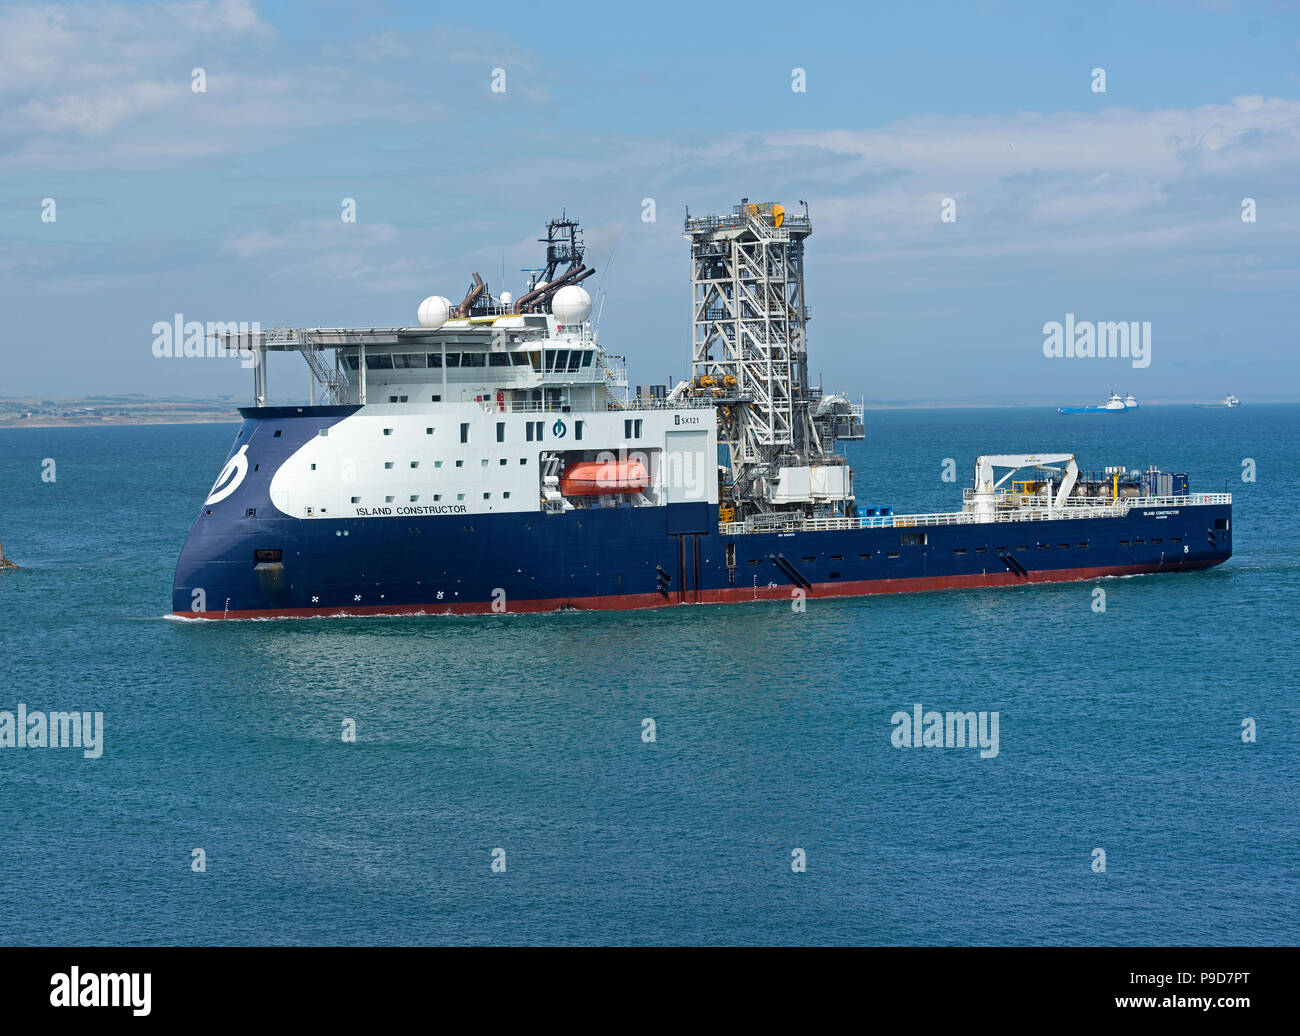 Die Offshore Nordsee Schiff Insel Konstruktor auf dem Weg nach Aberdeen Hafen her der Nordsee. Stockfoto